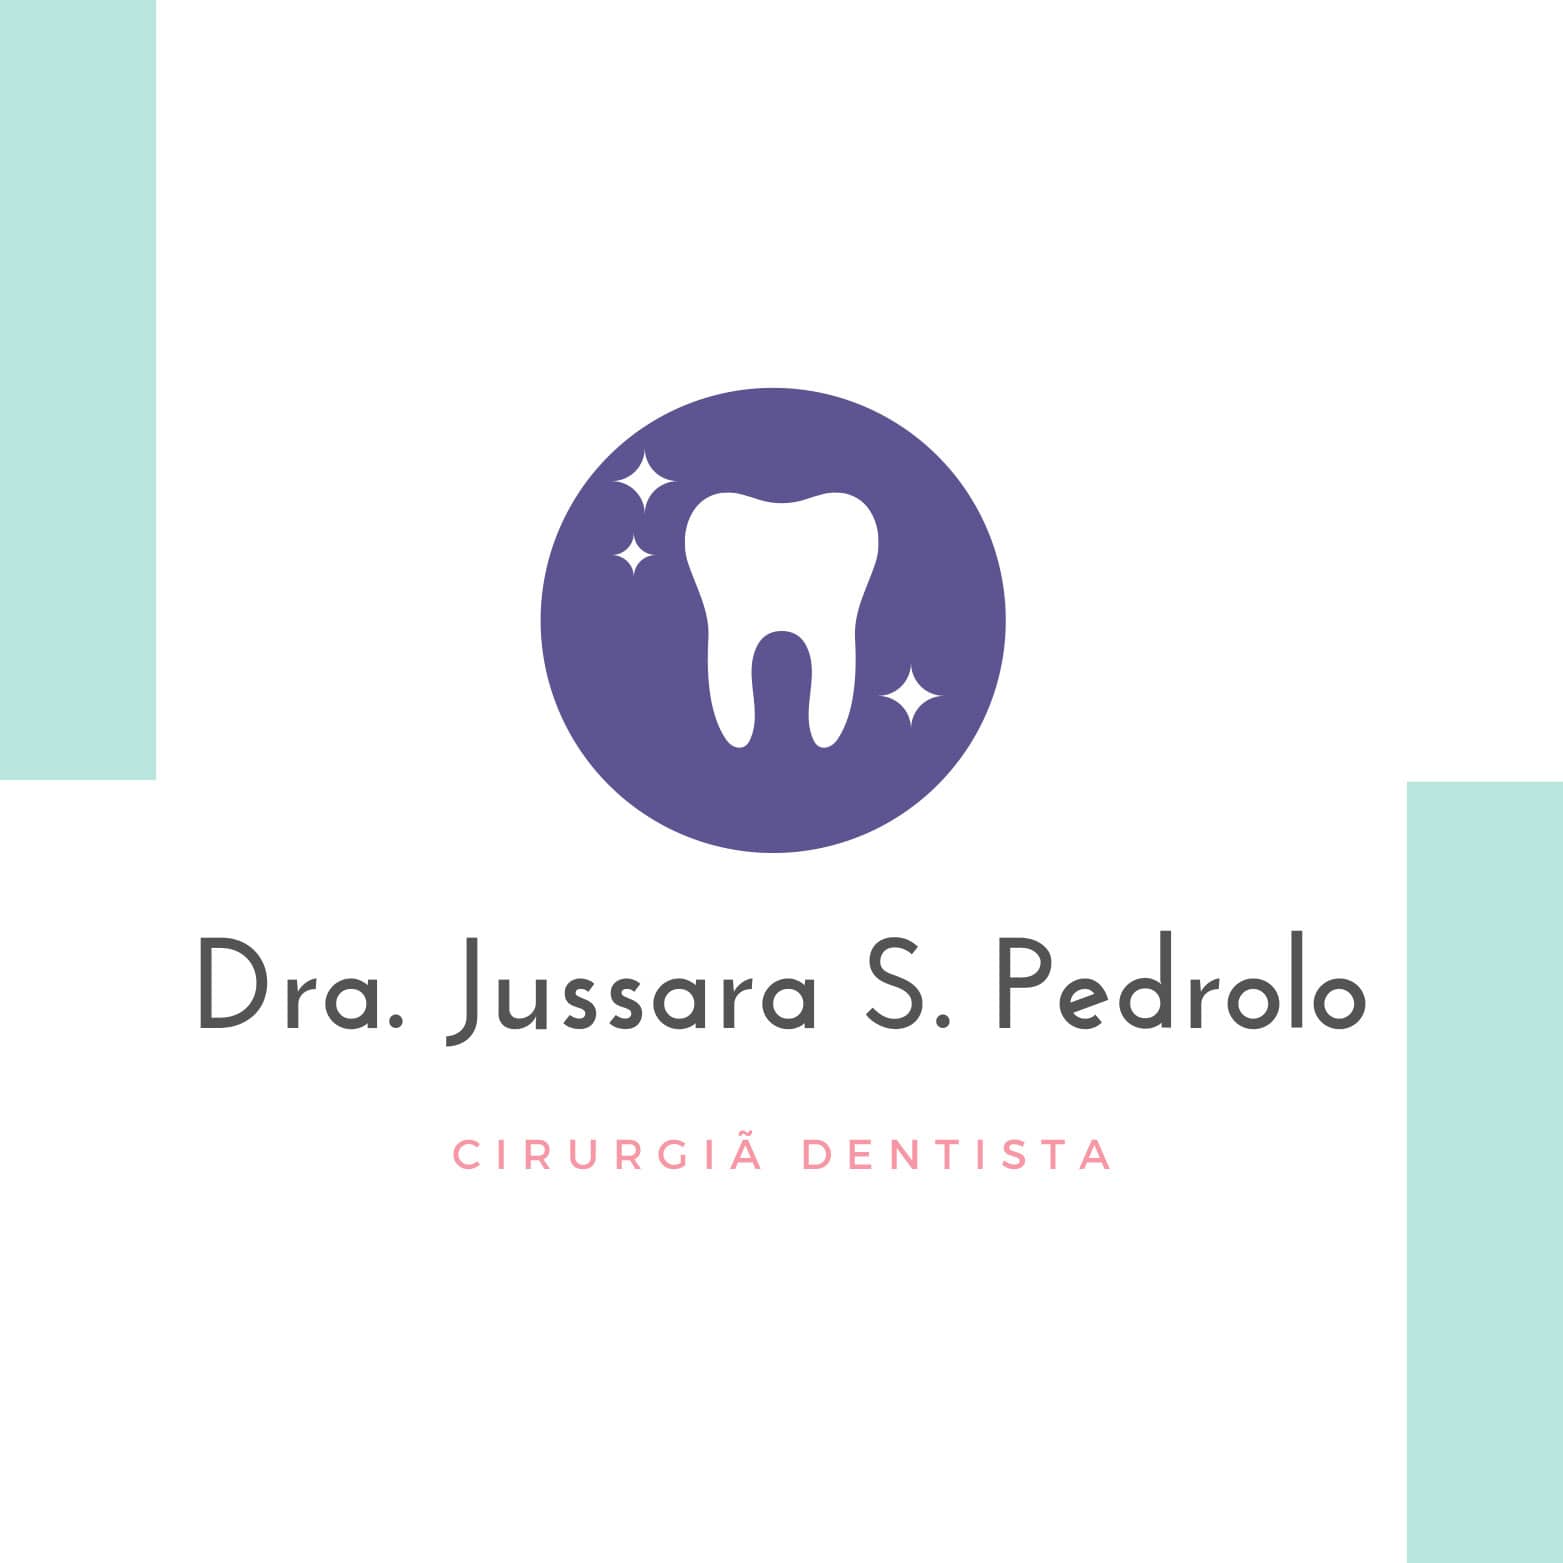 Dentista no Bairro Jardim Paraíso - Joinville